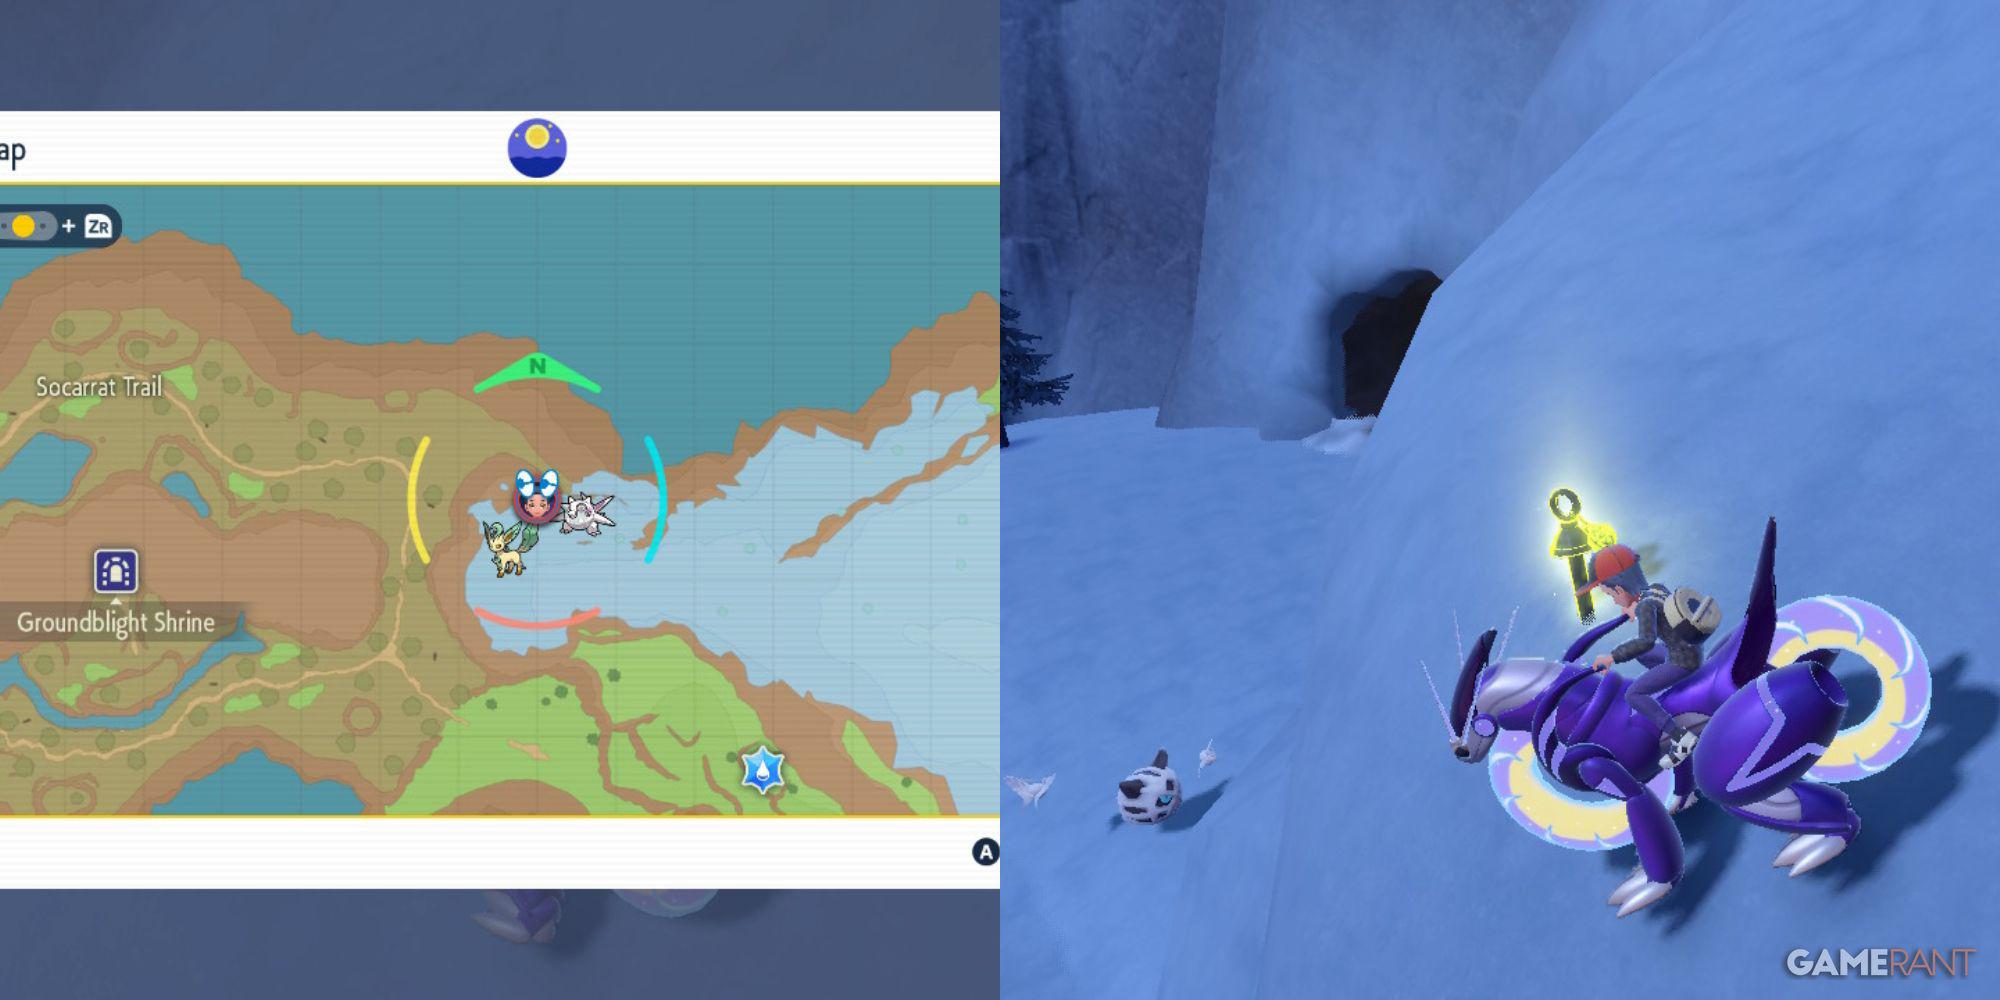 A localização dos lendários santuários de Pokémon Scarlet e Violet